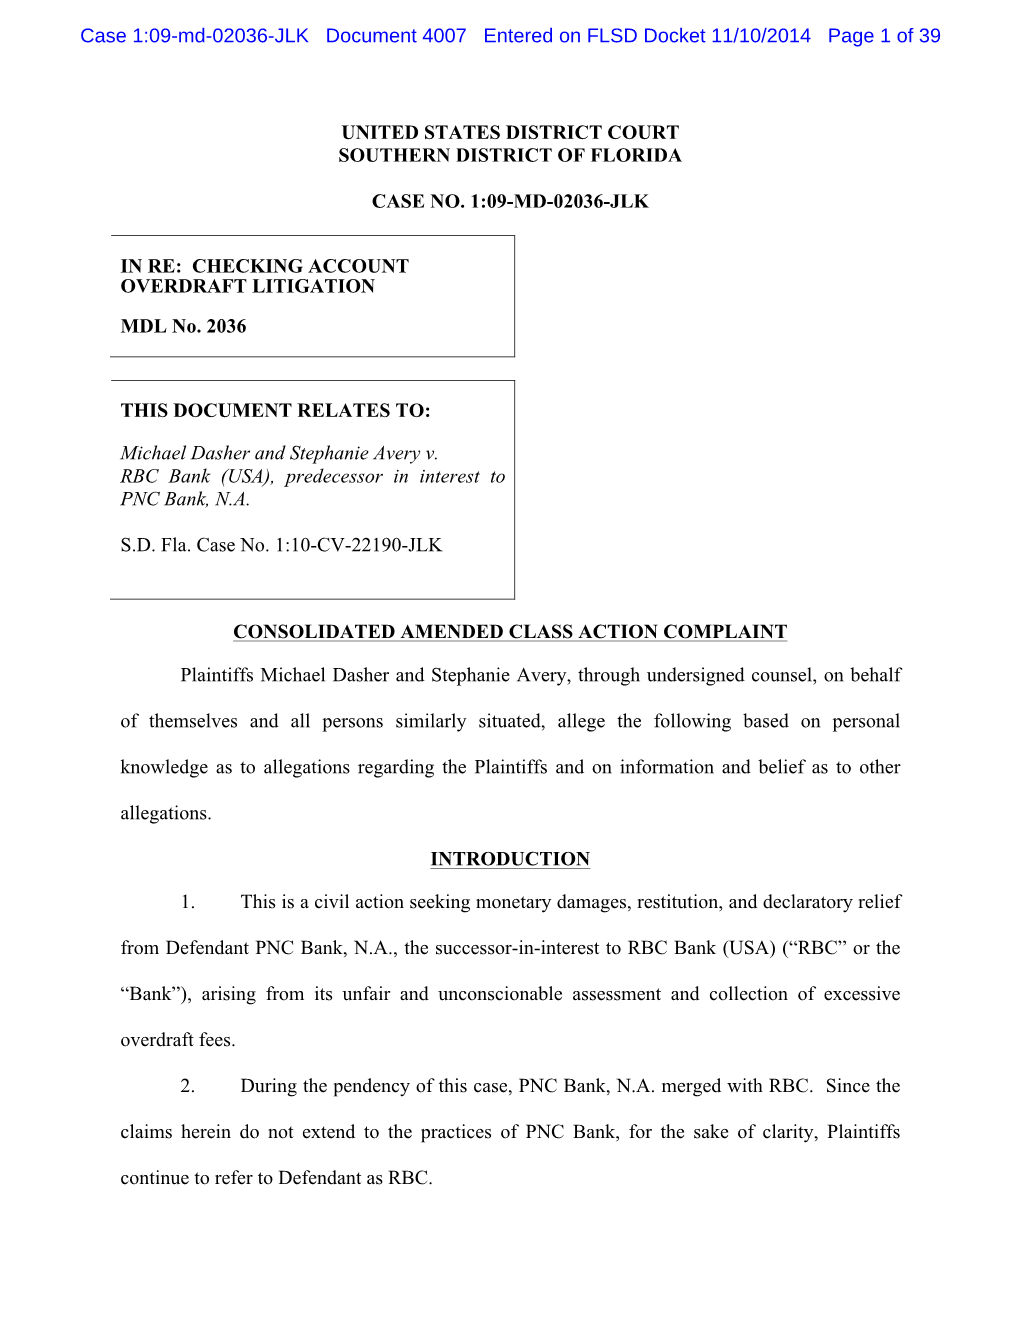 Case 1:09-Md-02036-JLK Document 4007 Entered on FLSD Docket 11/10/2014 Page 1 of 39